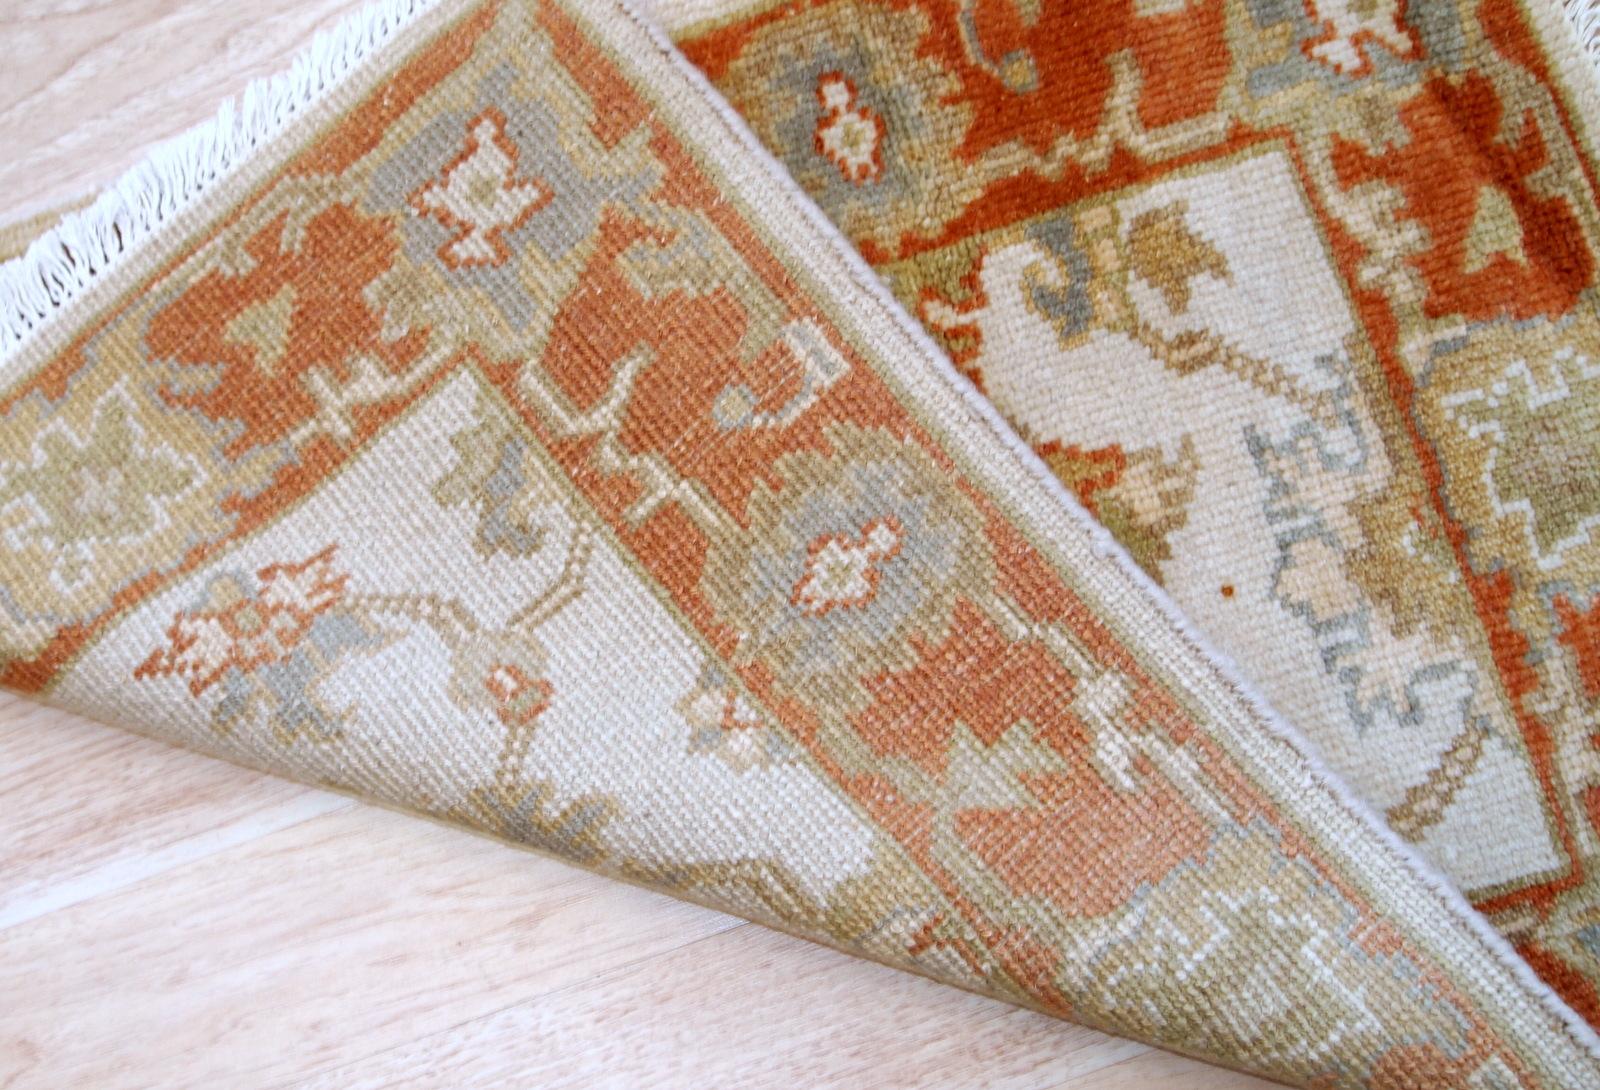 Handgefertigte alte Indo-Mahal-Matte aus Wolle. Der Teppich stammt aus dem Ende des 20. Jahrhunderts und ist in gutem Originalzustand.

-Zustand: original gut,

- ca. 1980er Jahre,

- Größe: 2,1' x 3,2' (64cm x 97cm),

-Material: Wolle,

-